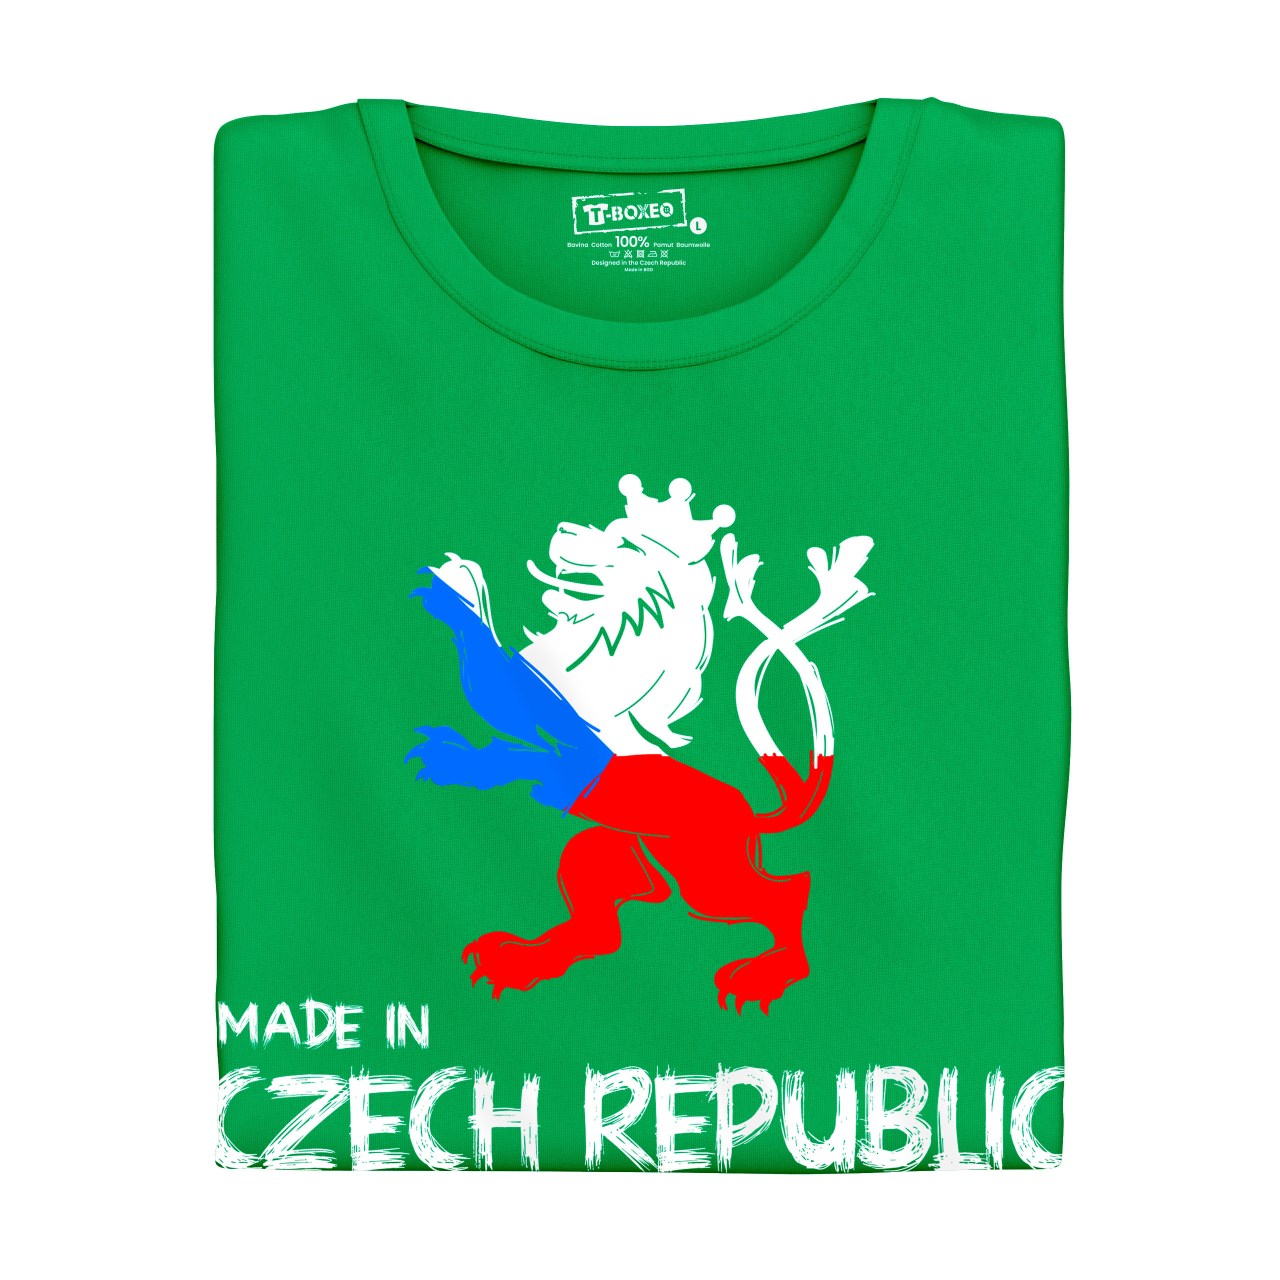 Pánské tričko s potiskem ”Made in Czech Republic”